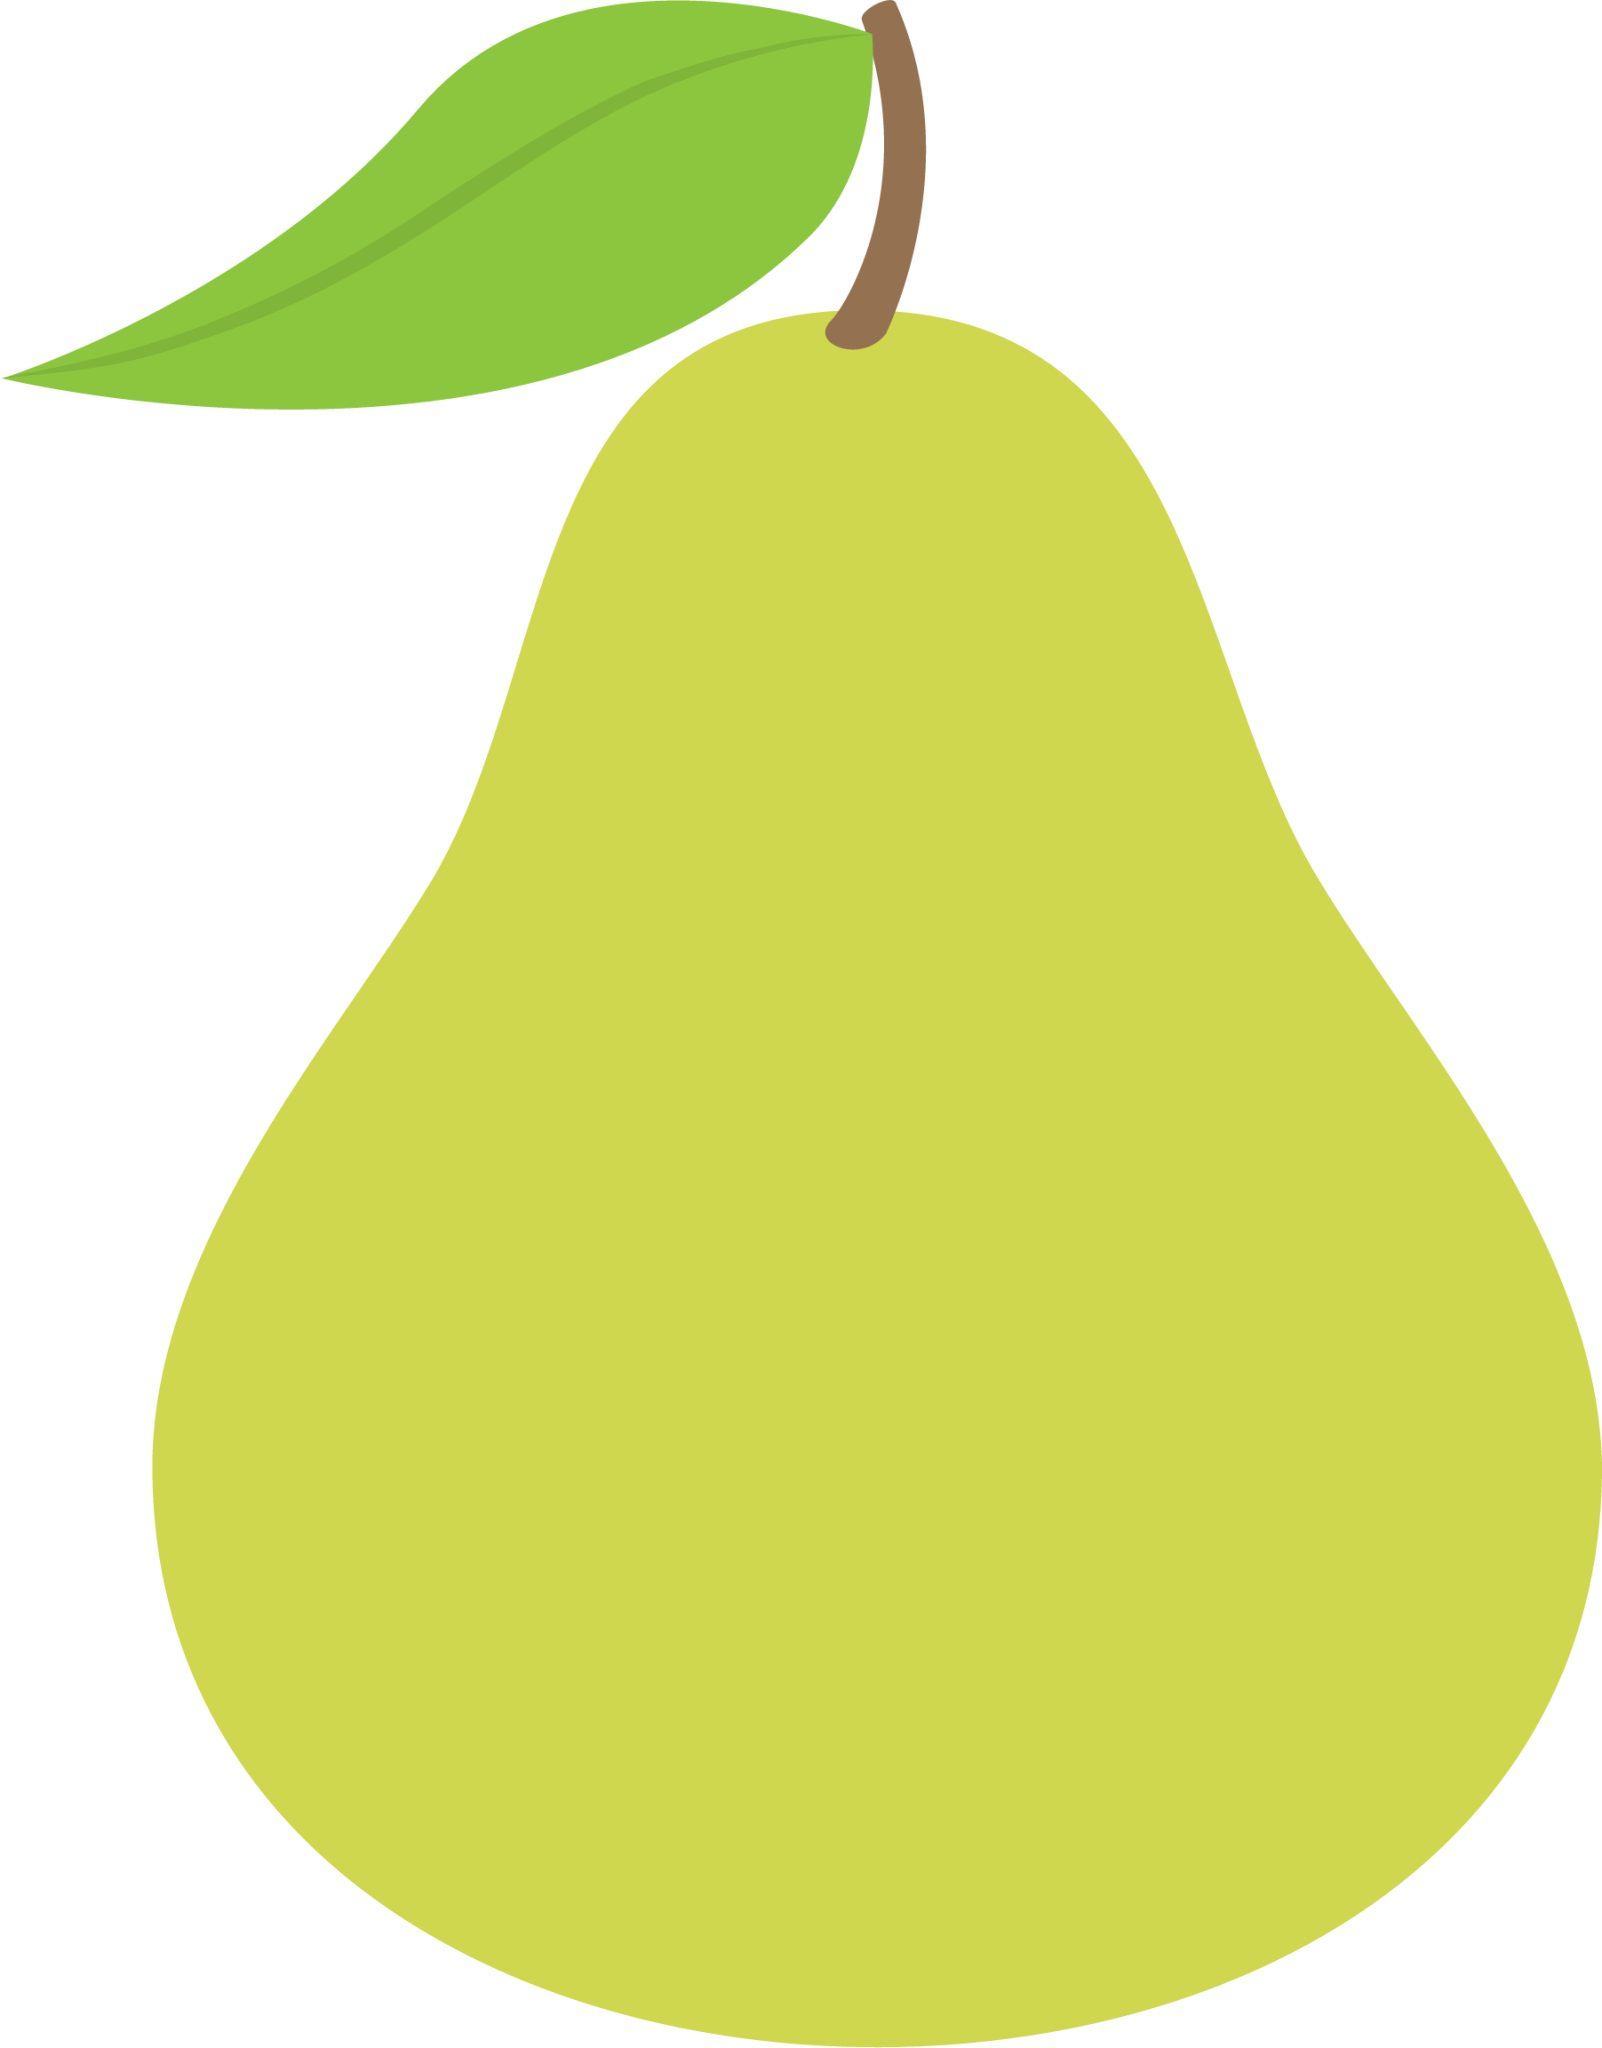 pear emoji